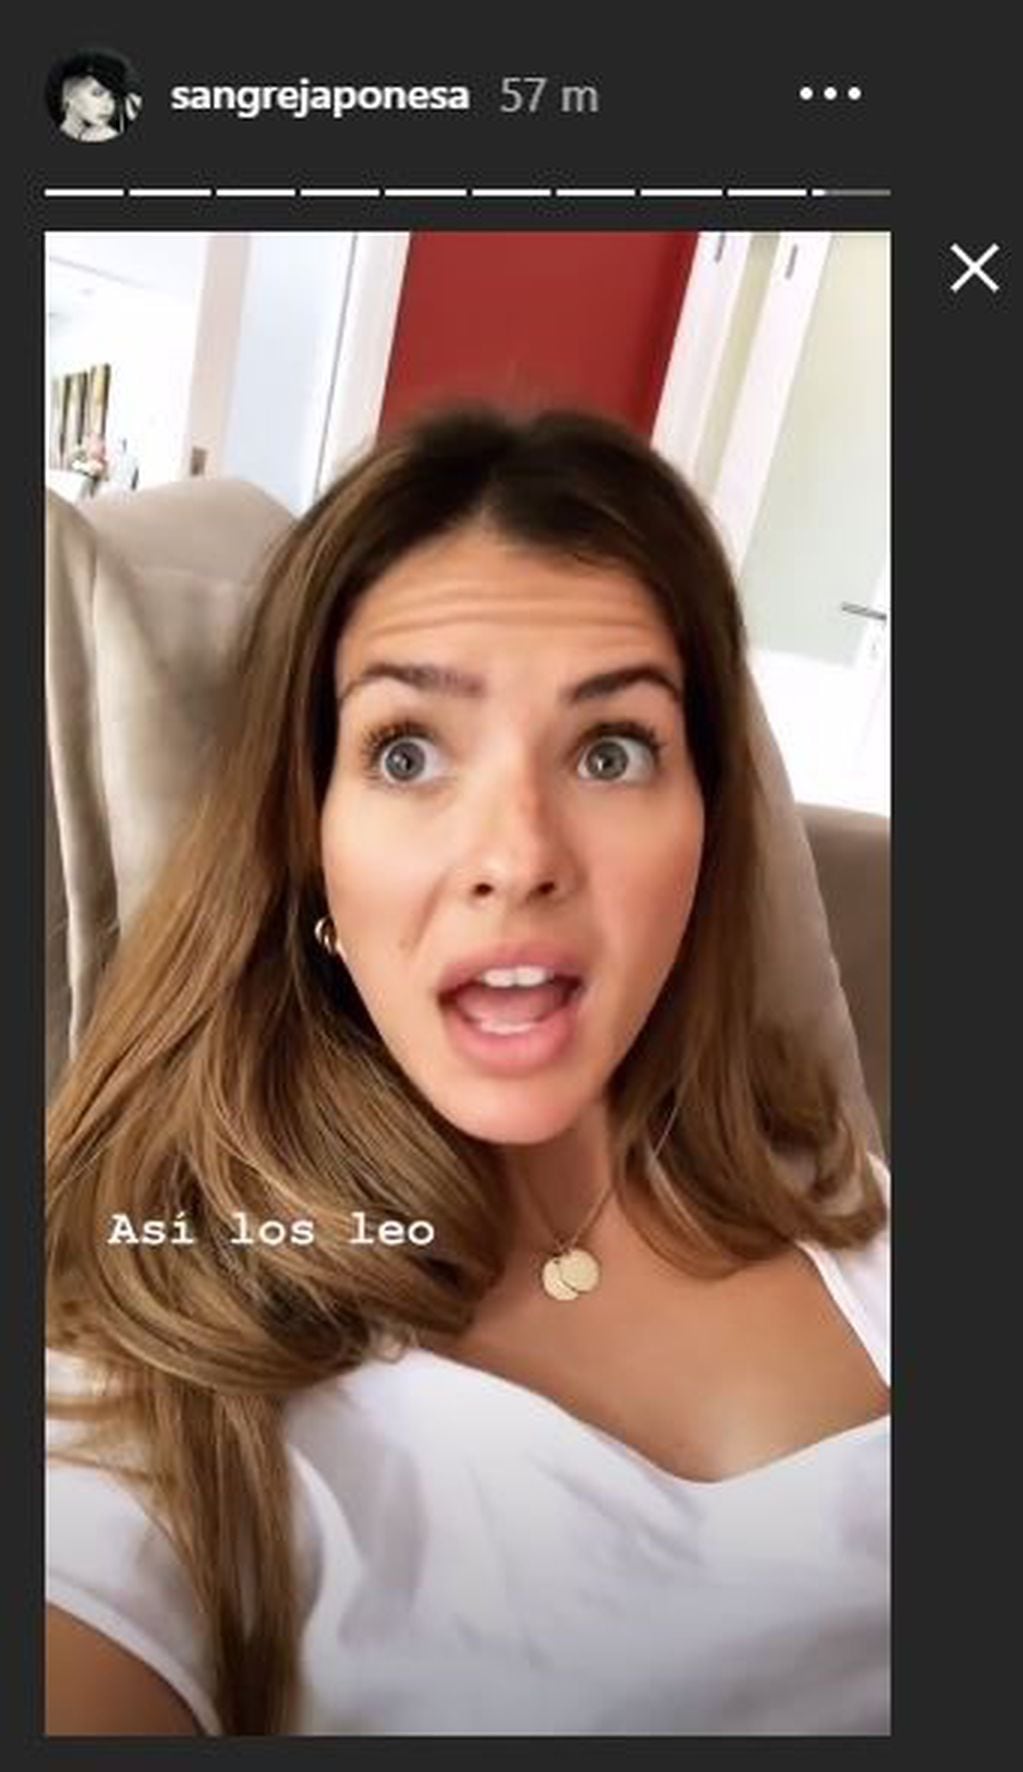 La actriz respondió a las críticas con humor en una historia en Instagram